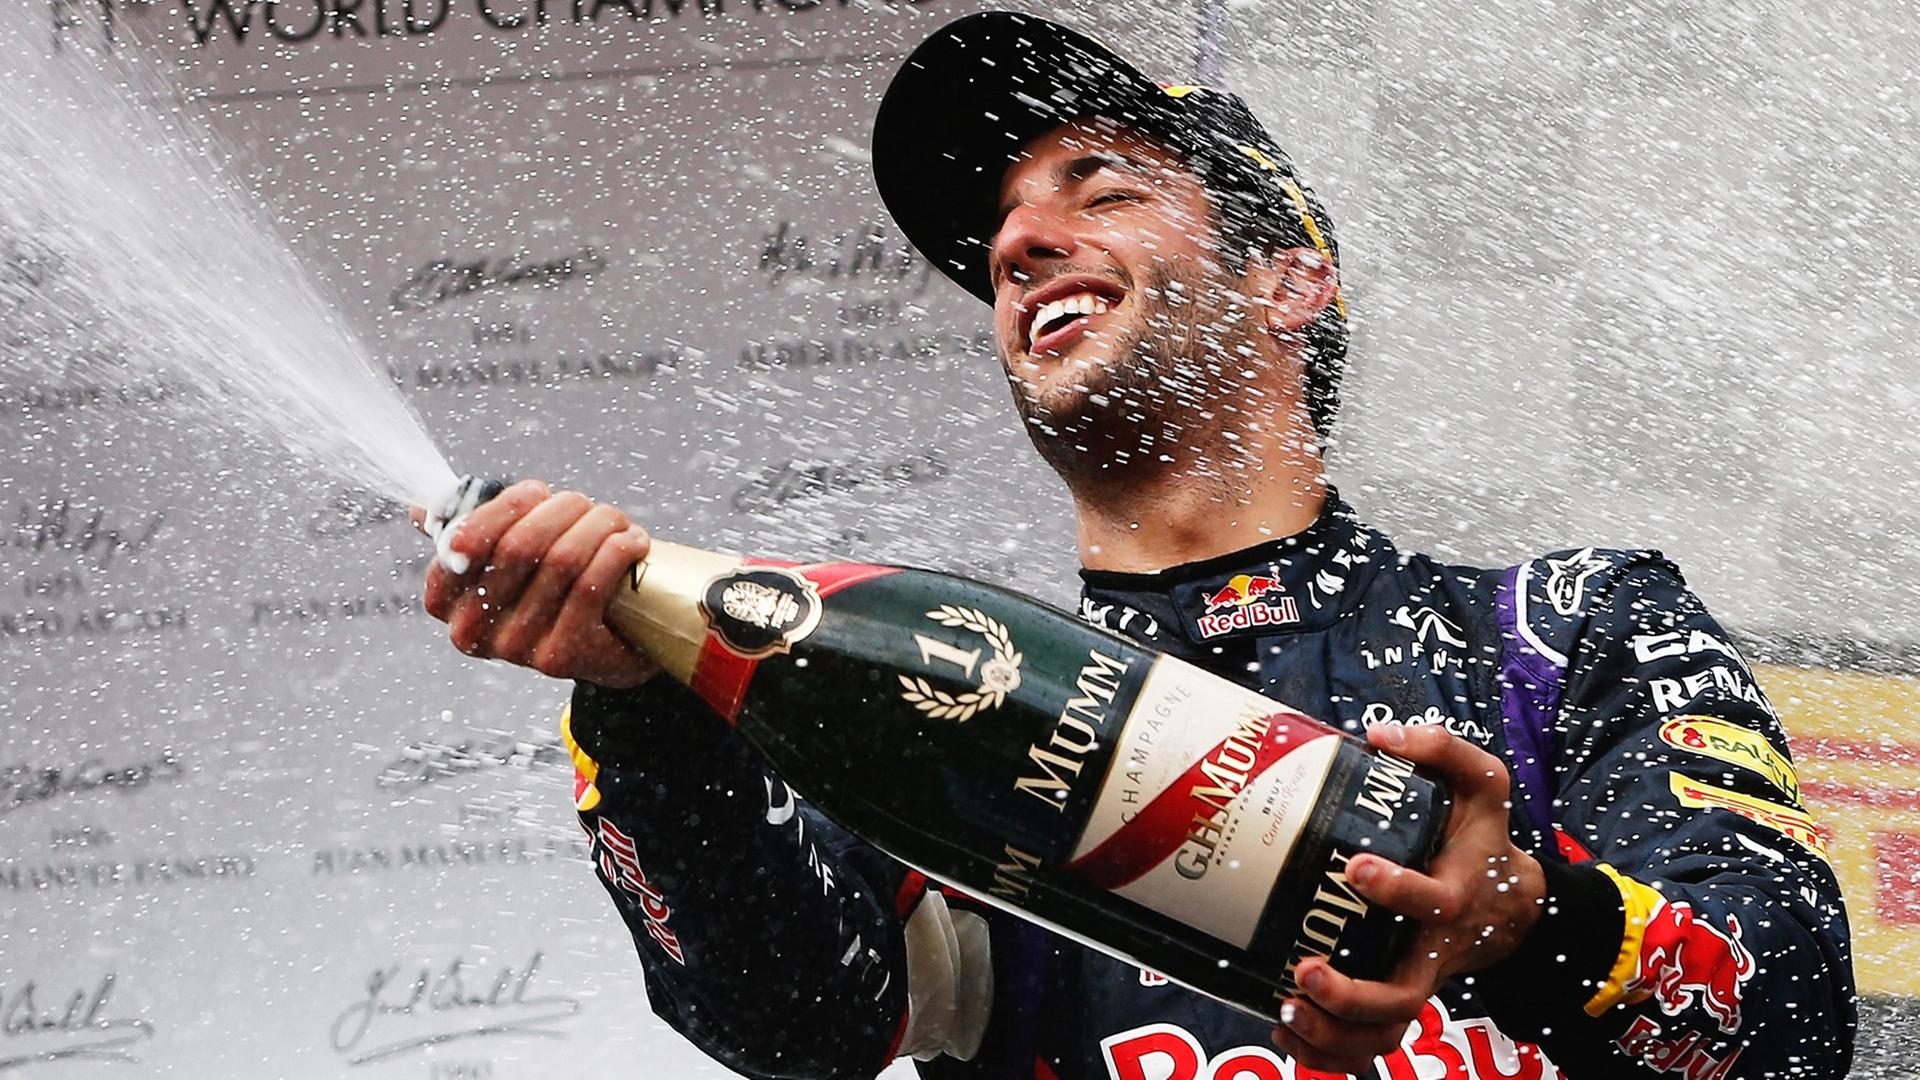 Daniel Ricciardo sprüht nach seinem Sieg Sekt aus einer riesigen Sektflasche.